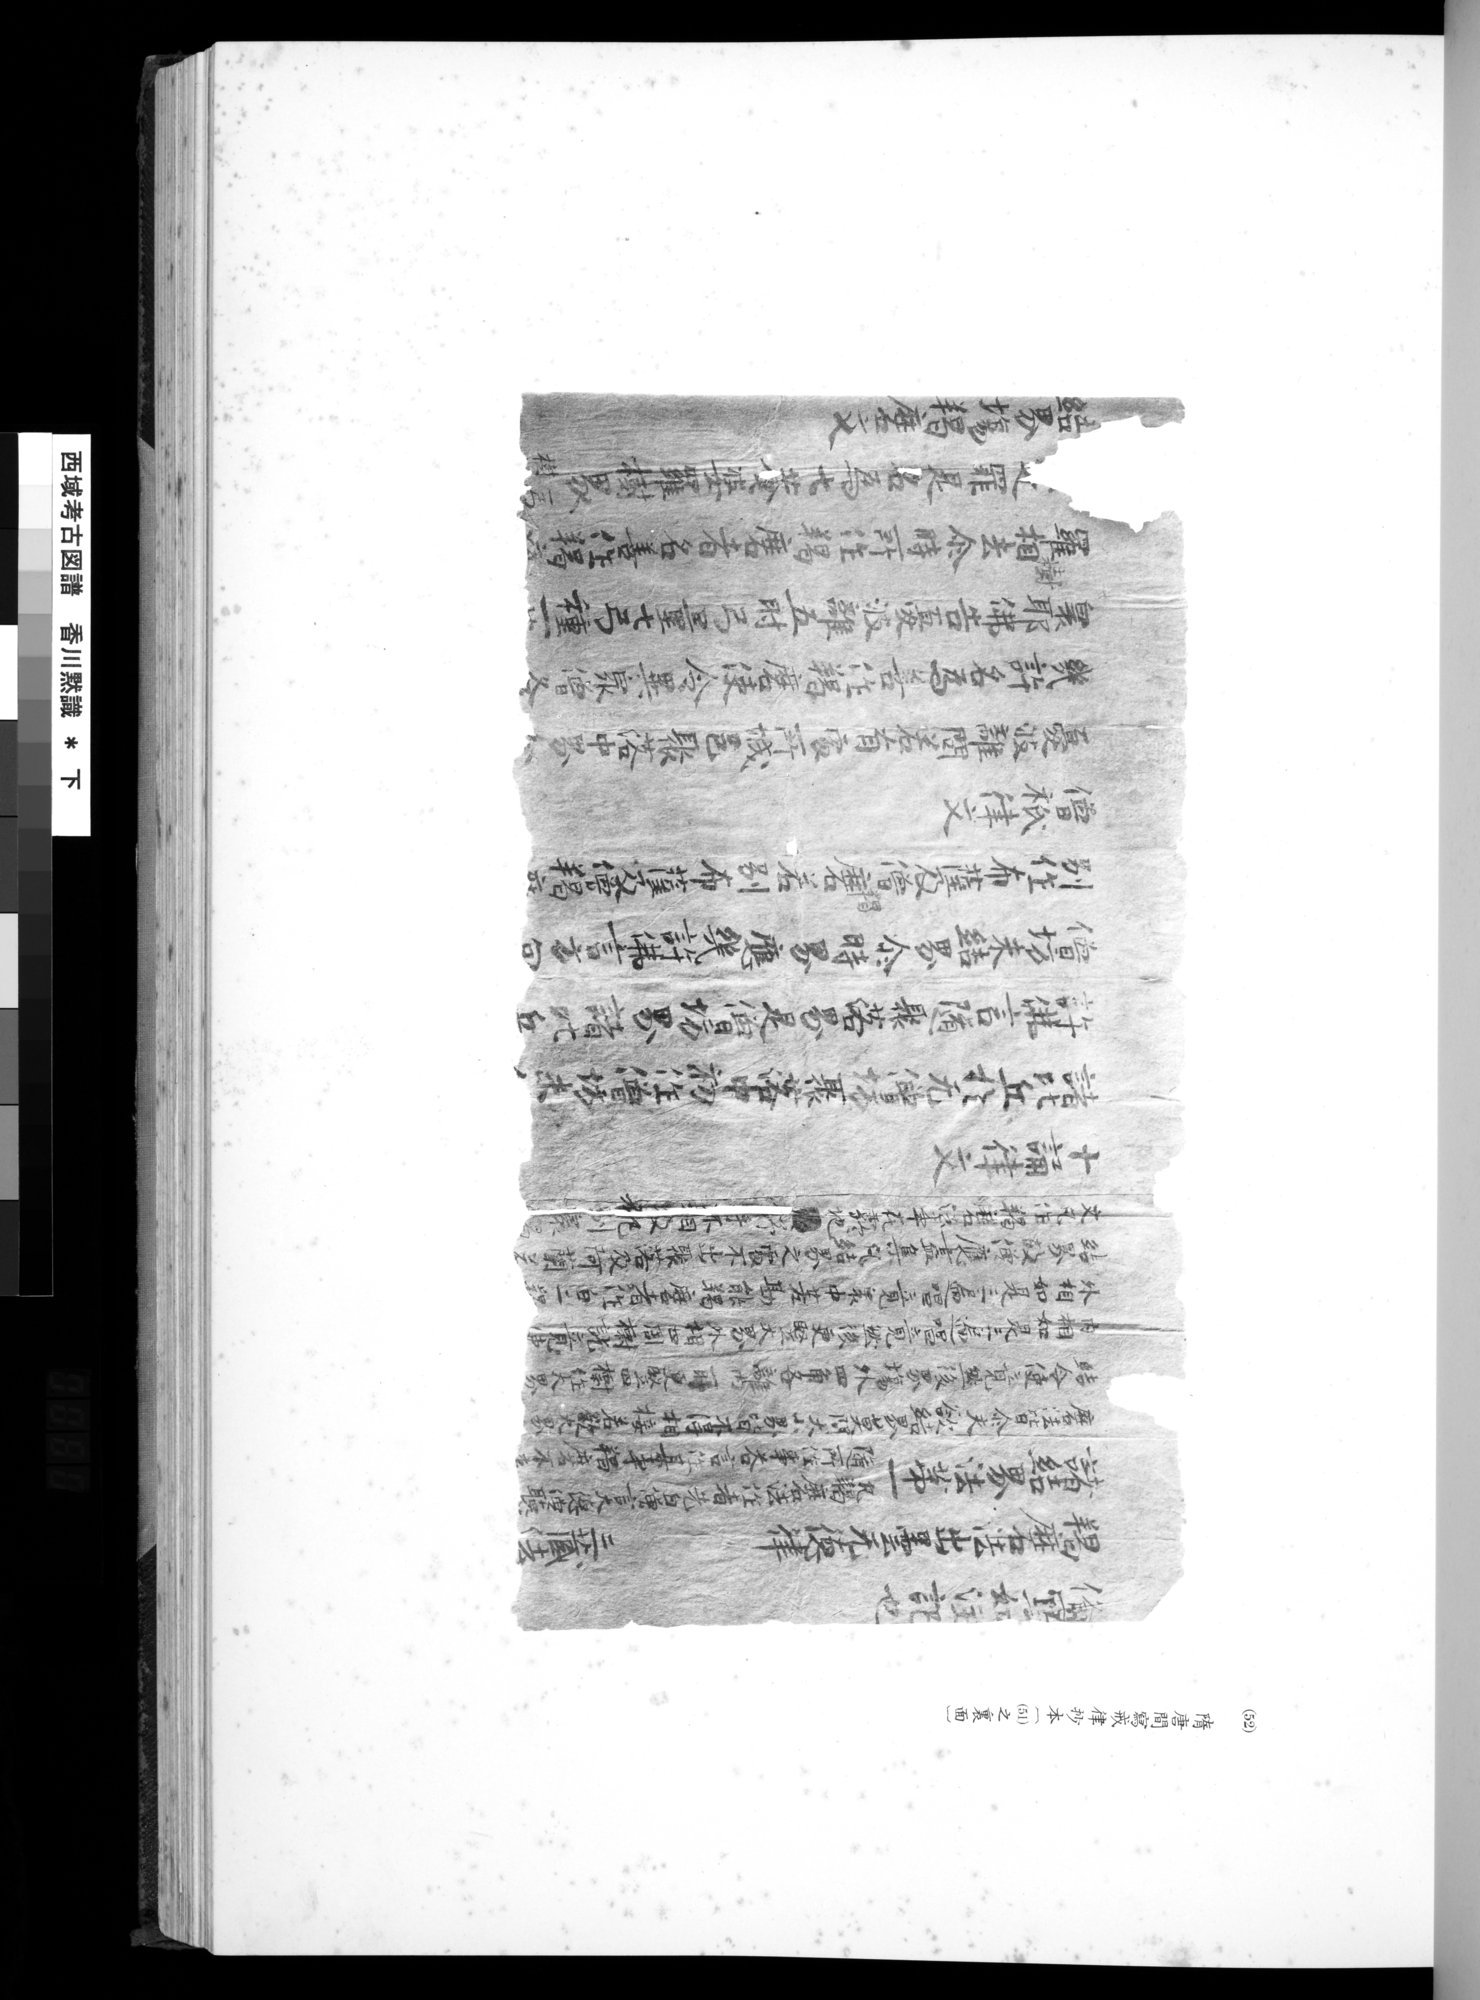 西域考古図譜 : vol.2 / Page 119 (Grayscale High Resolution Image)